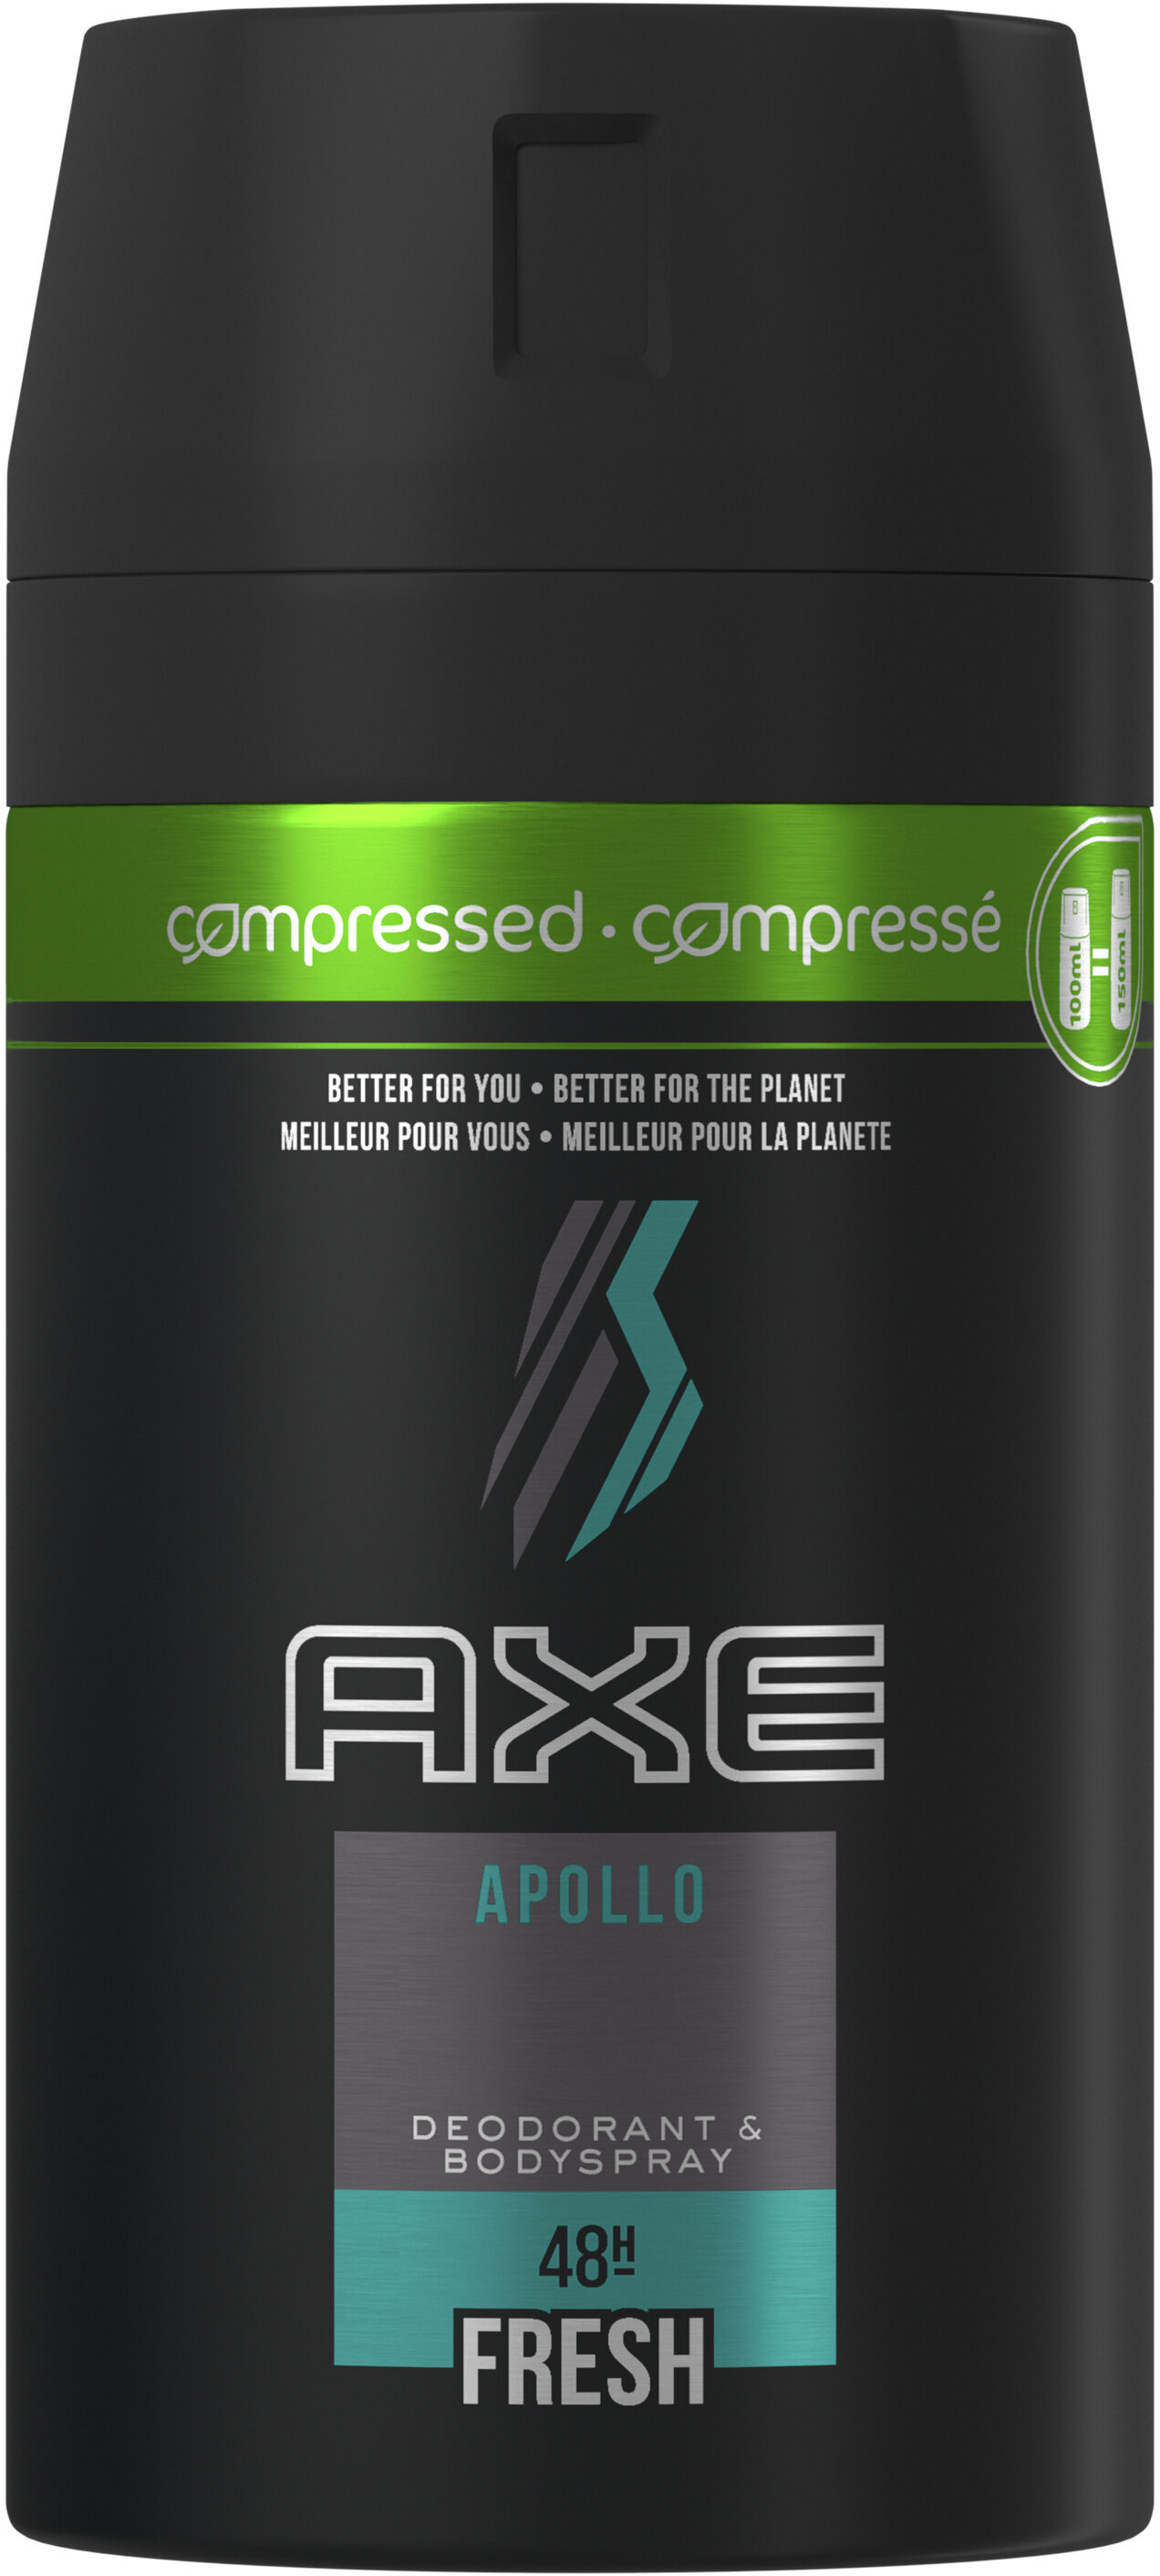 AXE Déodorant Homme Spray Compressé Apollo Frais 48h - Produit - fr